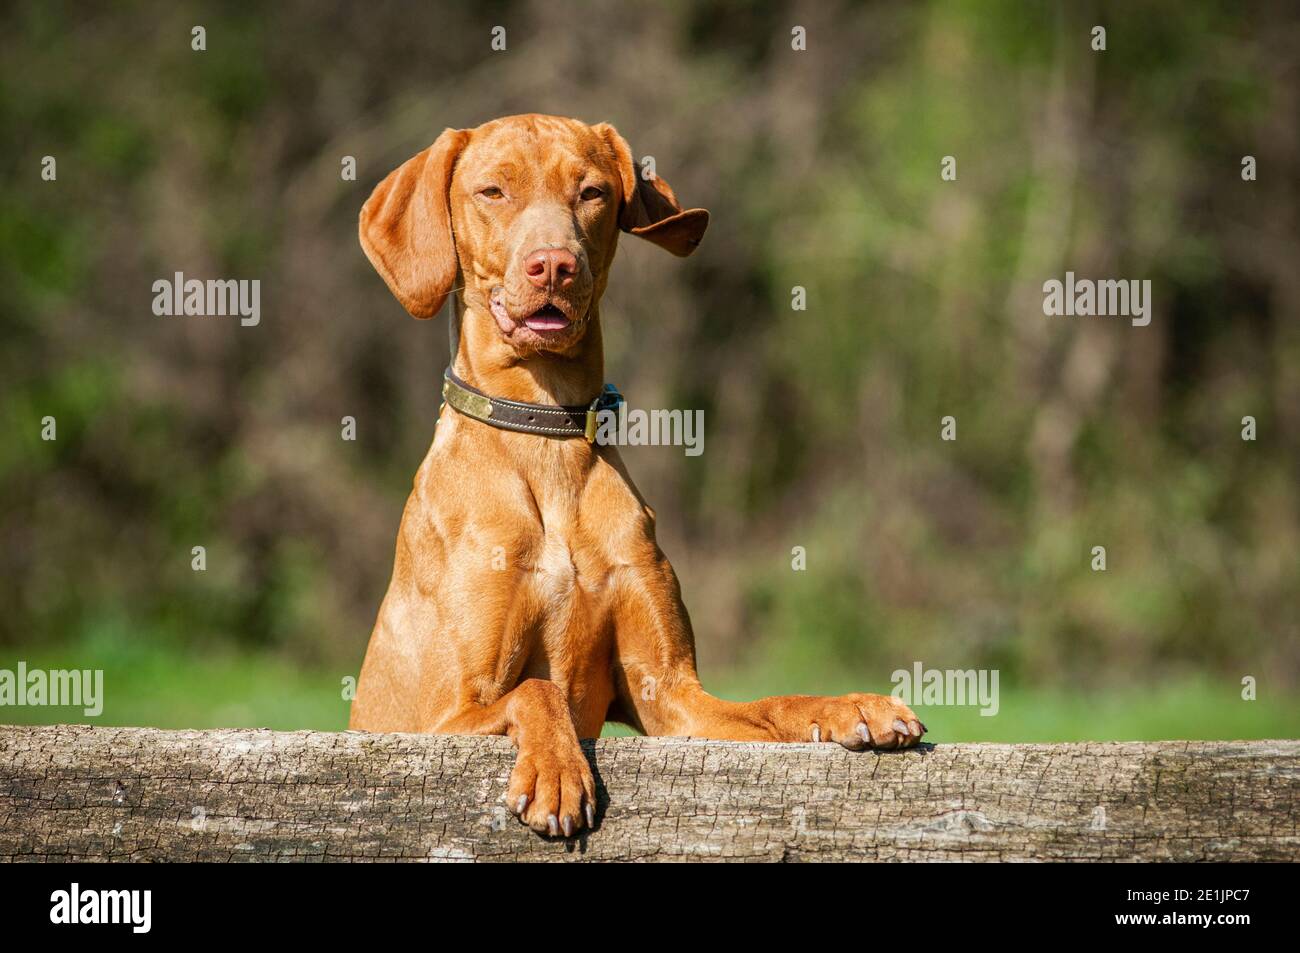 Schöne ungarische Vizsla Kopfschuss. Der Hund trägt einen Lederkragen und lehnt sich an einen Baumstamm. Sehr junger und fitter Hund. Stockfoto